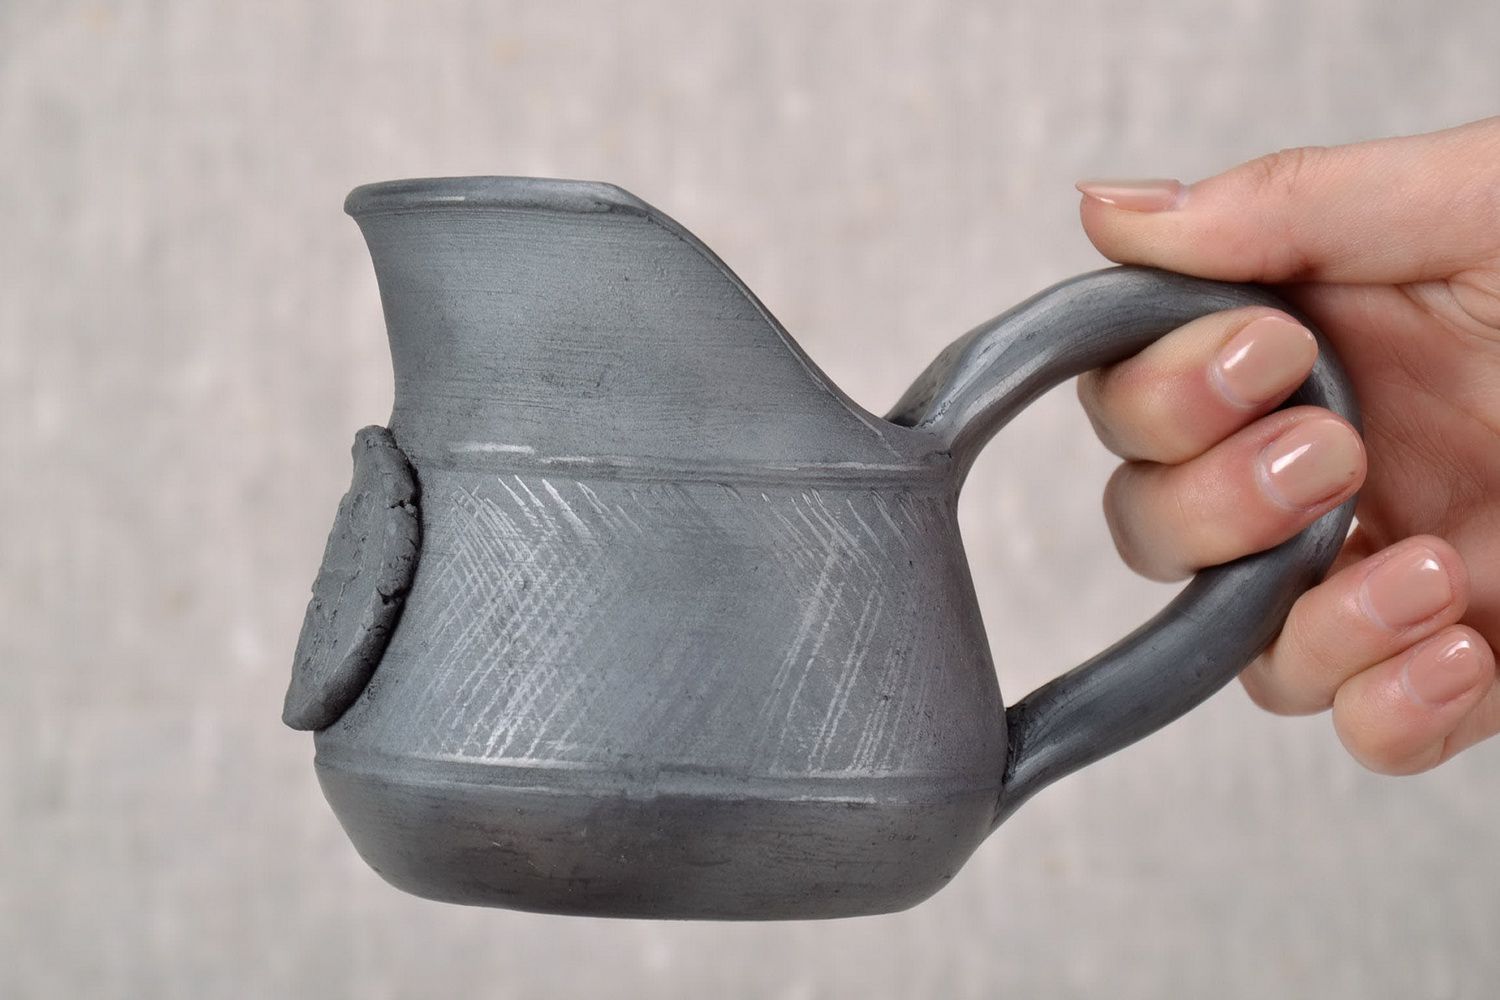 10 oz ceramic creamer jug with handle in black color 0,5 lb photo 5